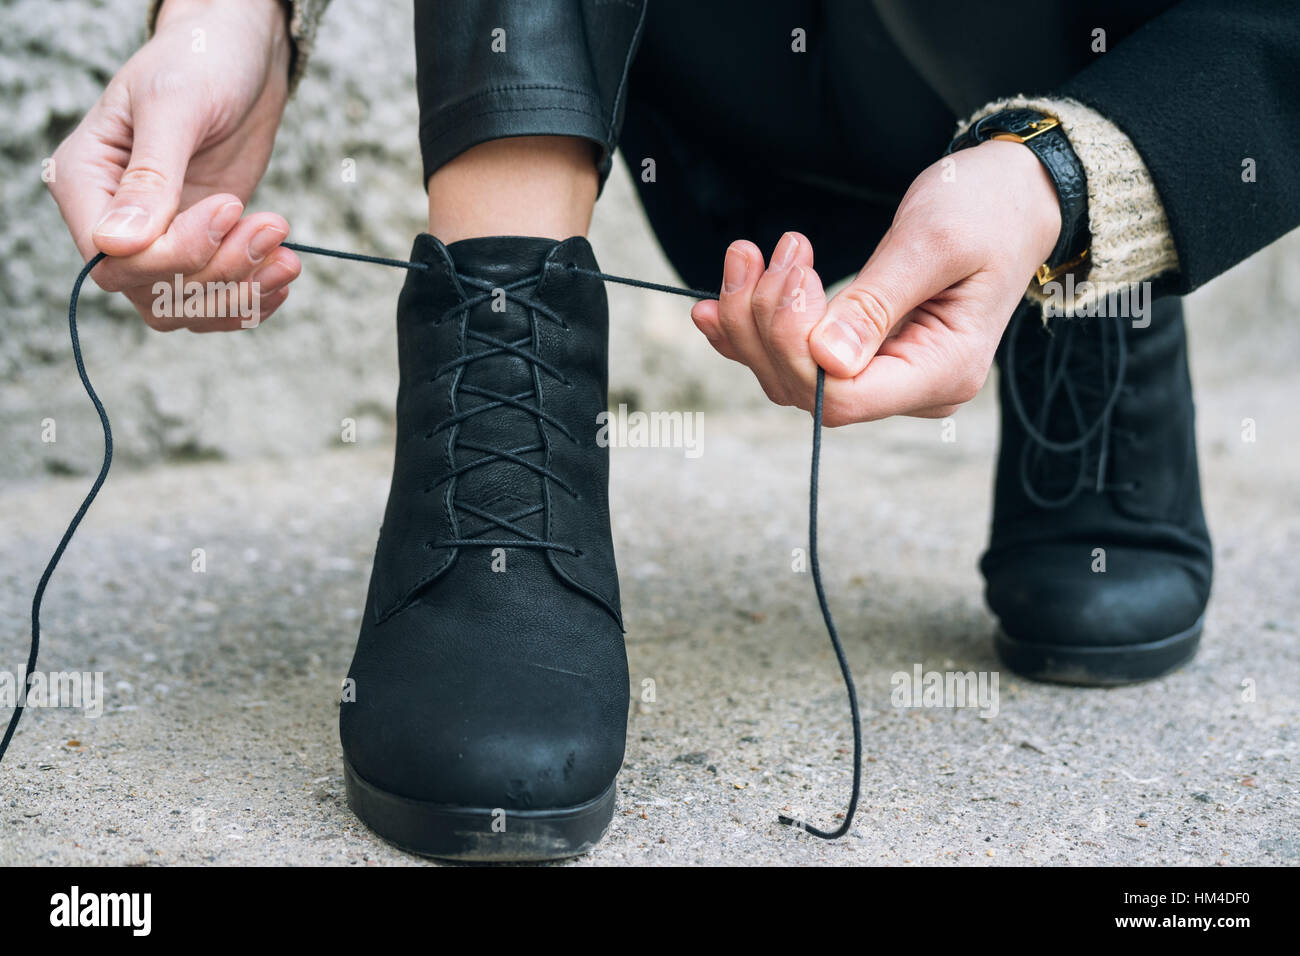 Femme en vêtements élégants attacher ses lacets de chaussures de près. Lacets de délié au cours d'une balade dans la ville Banque D'Images